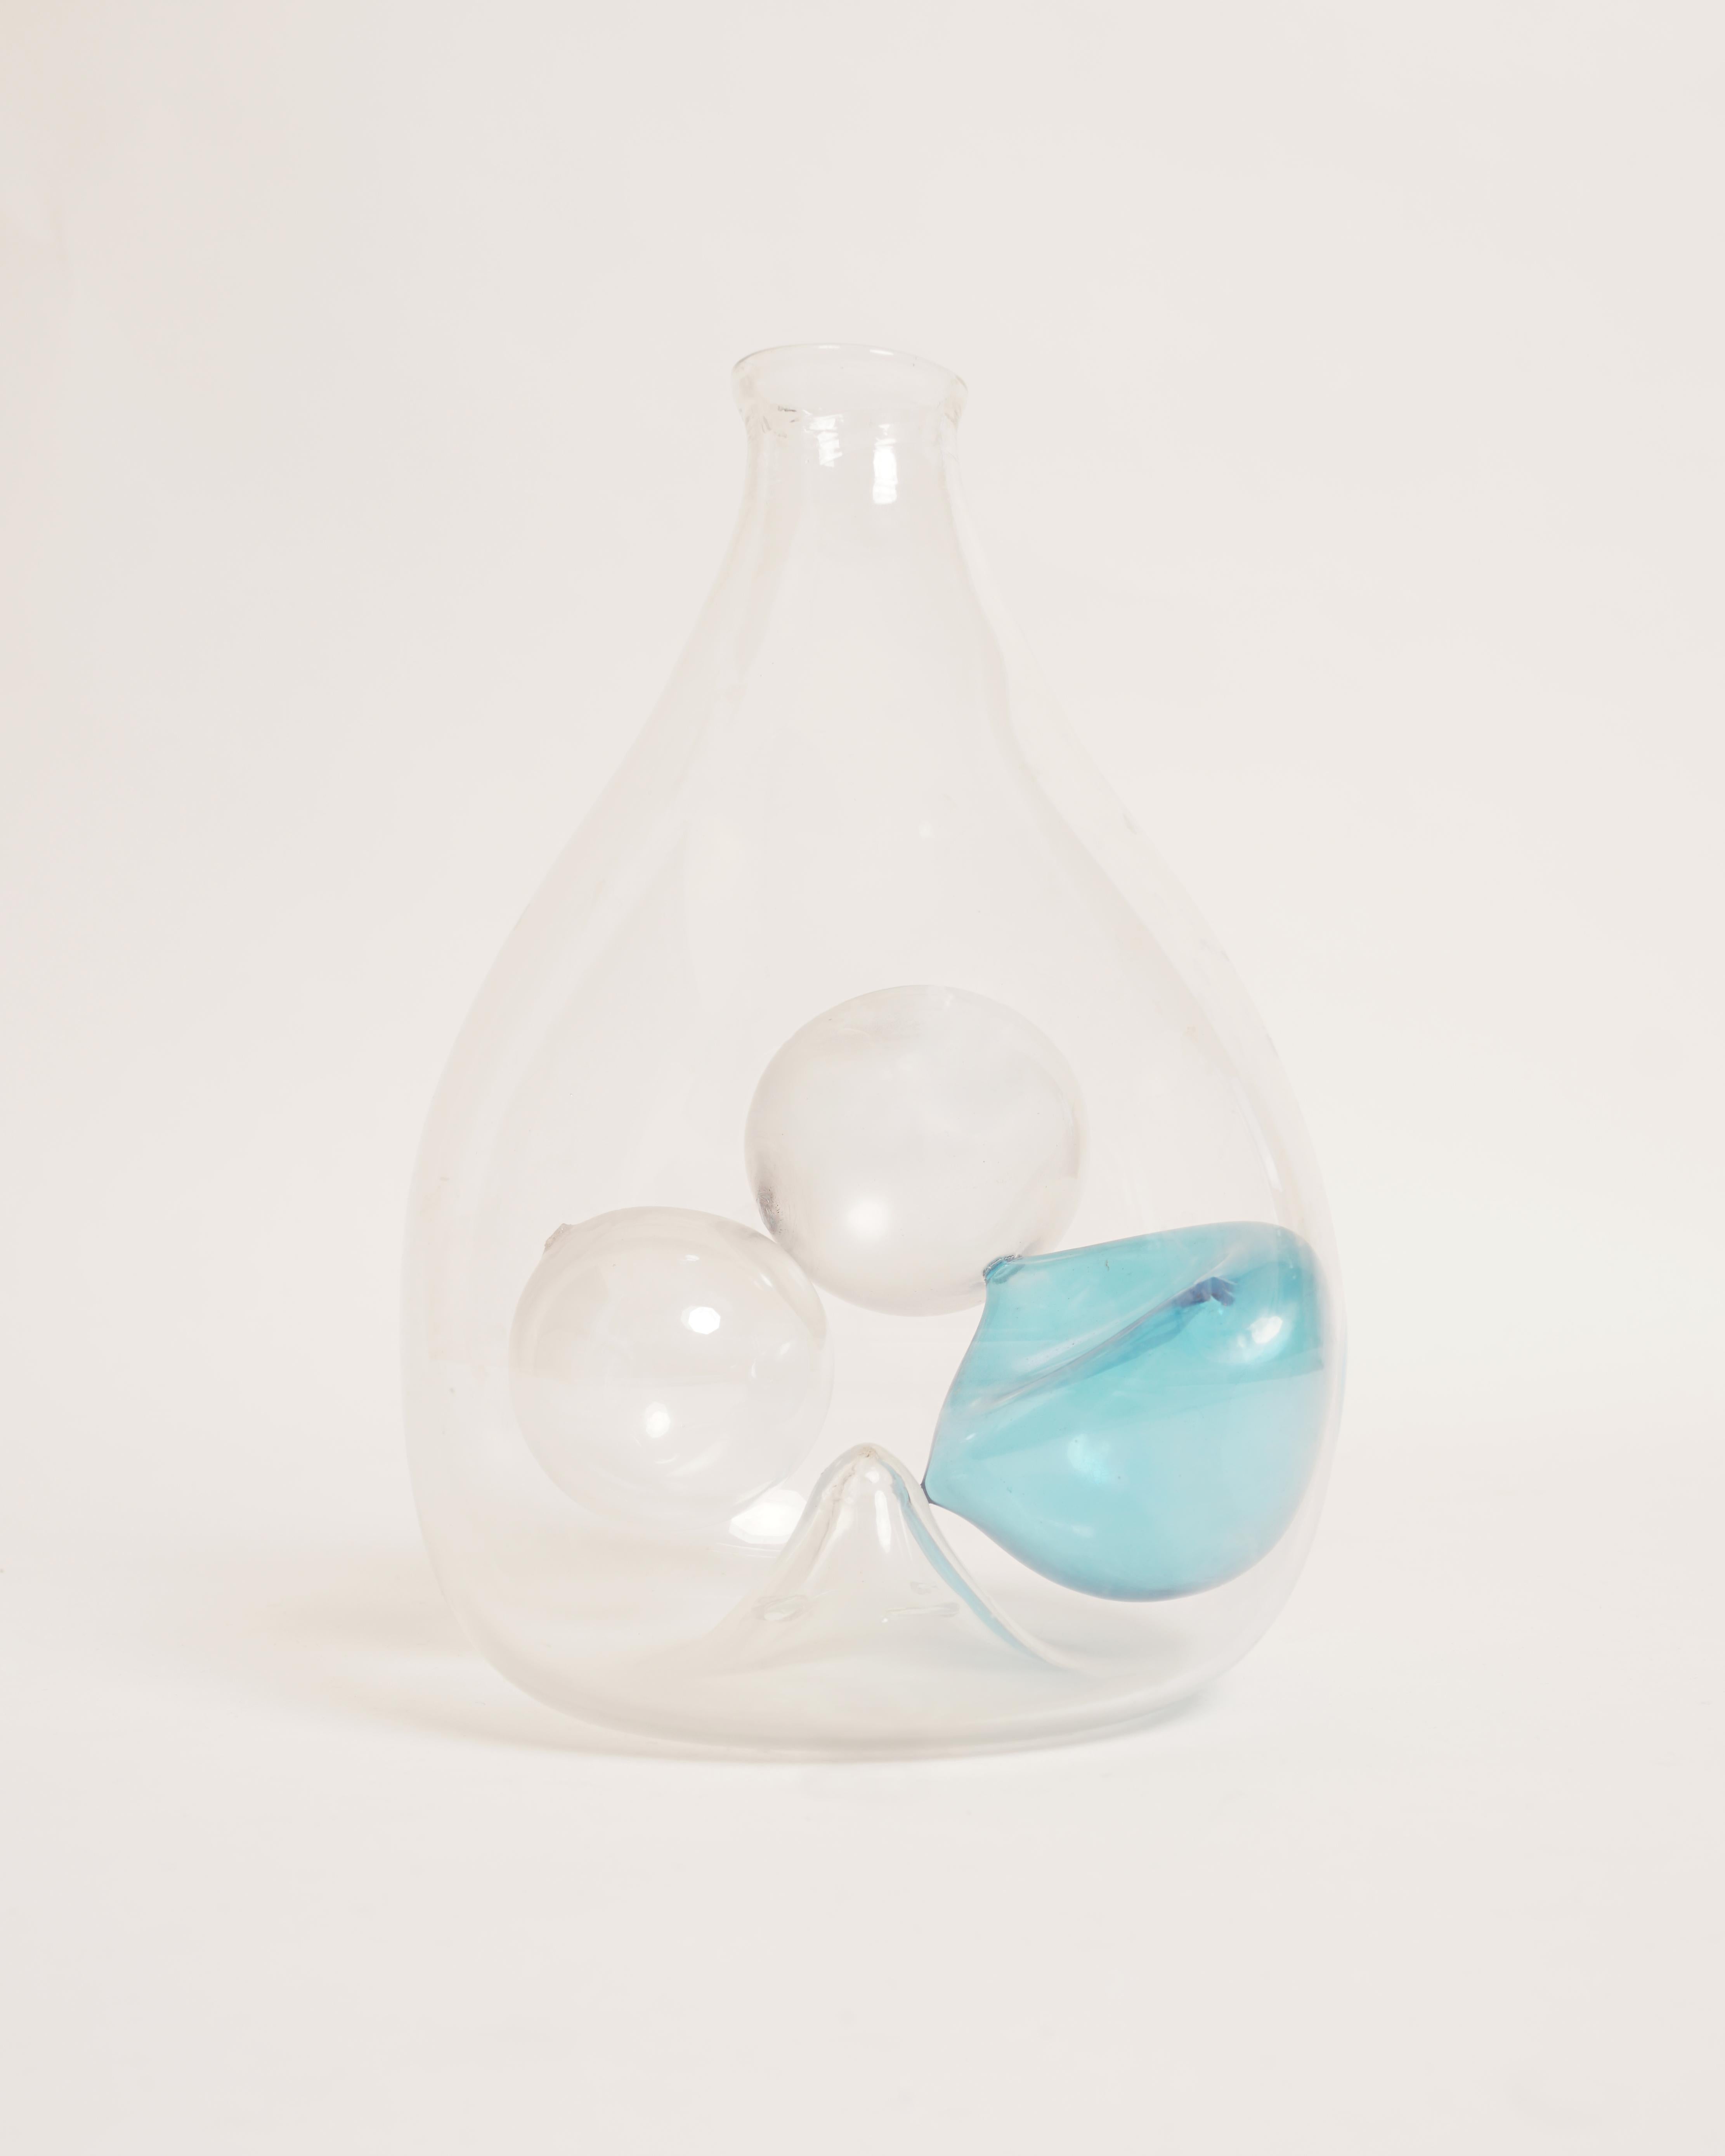 Fulvio Bianconi
Privatsammlung von Bianconi, um 1960
Ausführung: Geblasenes Glas, klar und blau, mit Glasblasen im Inneren.
Unterschrieben: Bianconi
H : 23 cm (9.05